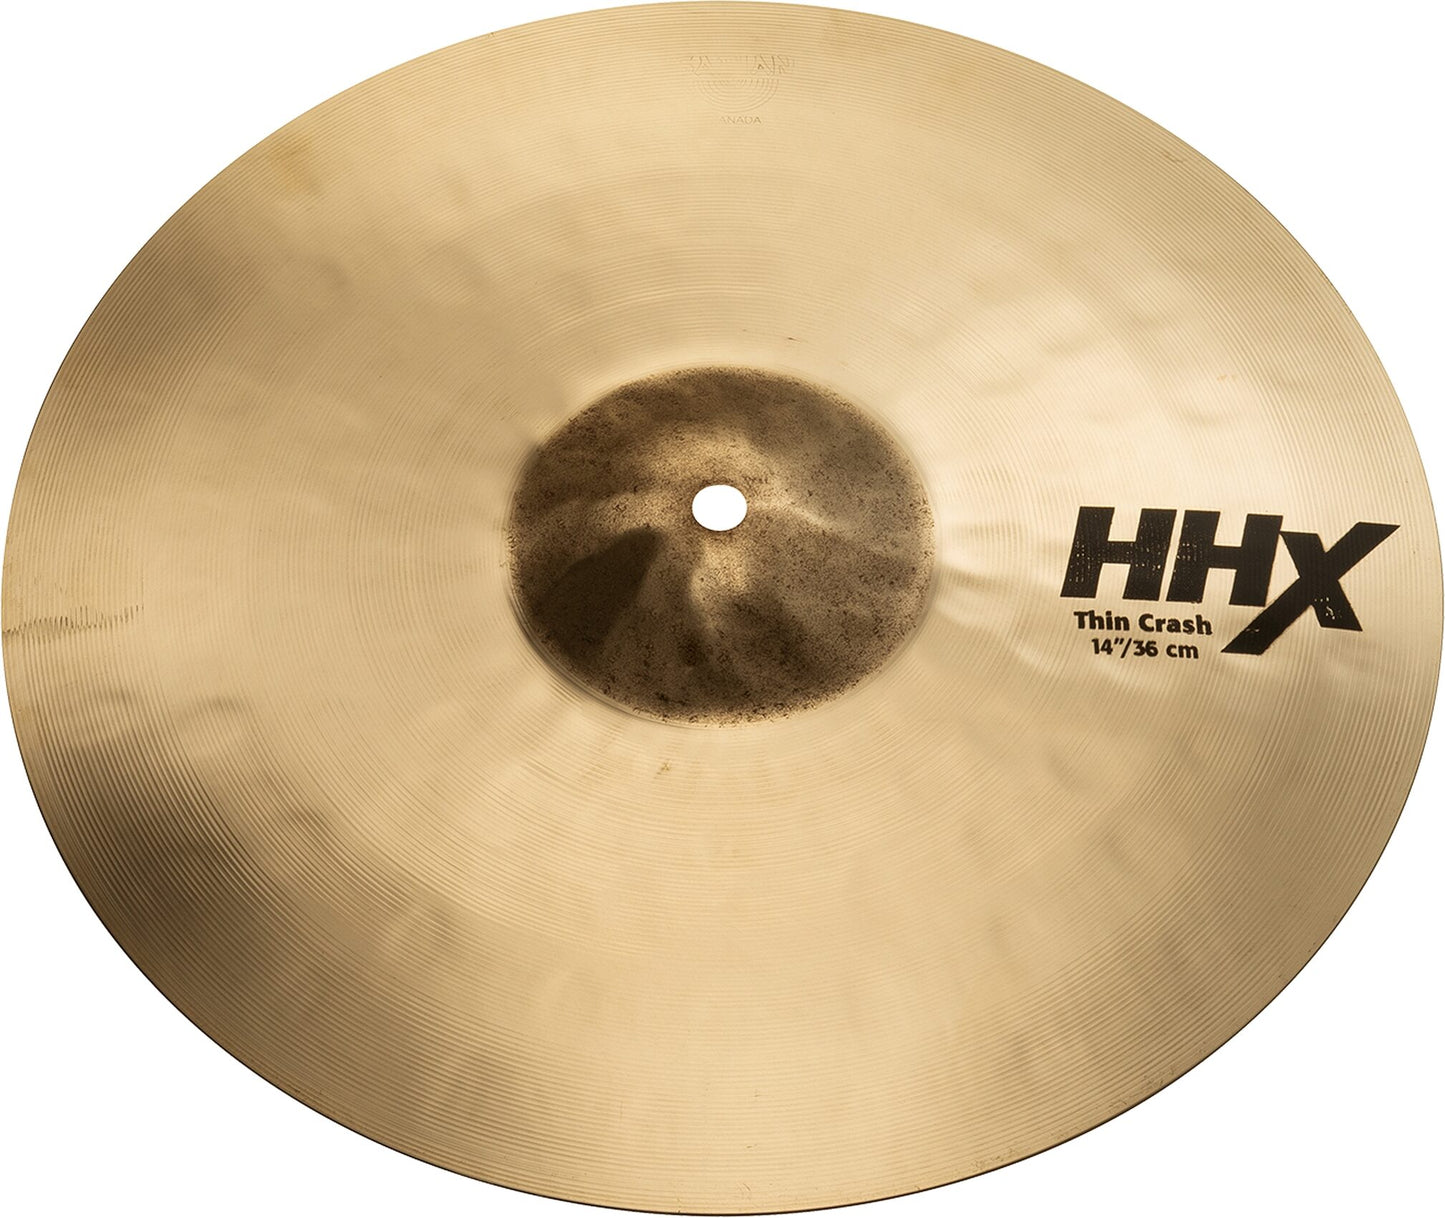 Sabian HHX Thin Crash Cymbal, Brilliant Finish, 14 Inch